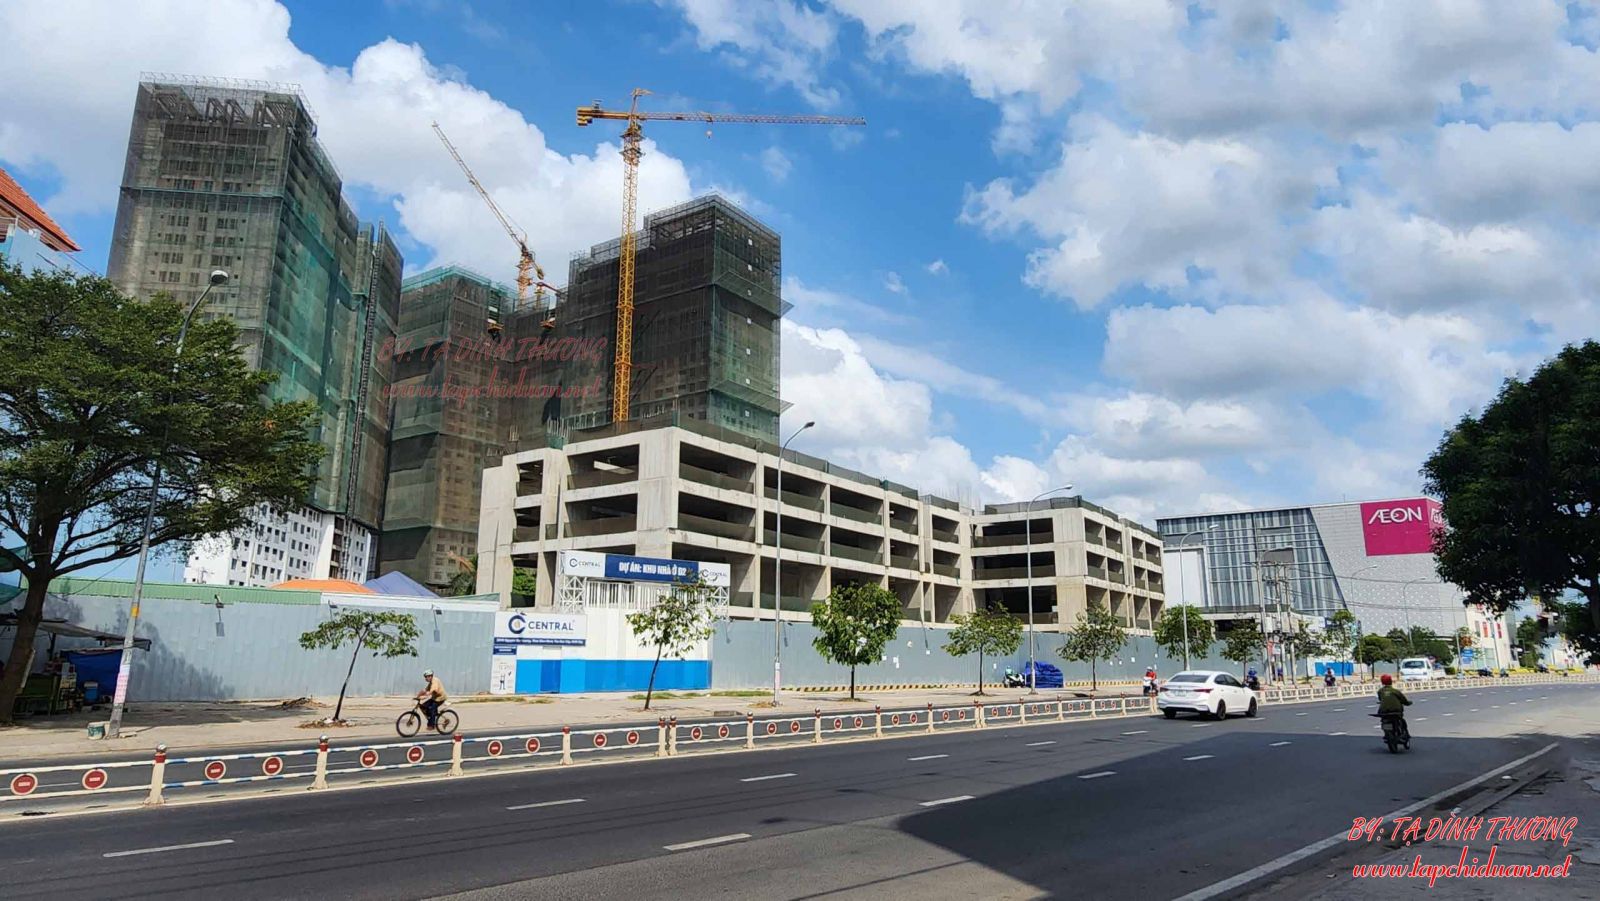 Tiến độ xây dựng chung cư AIO City Tên Lửa Quận Bình Tân tháng 4 năm 2023